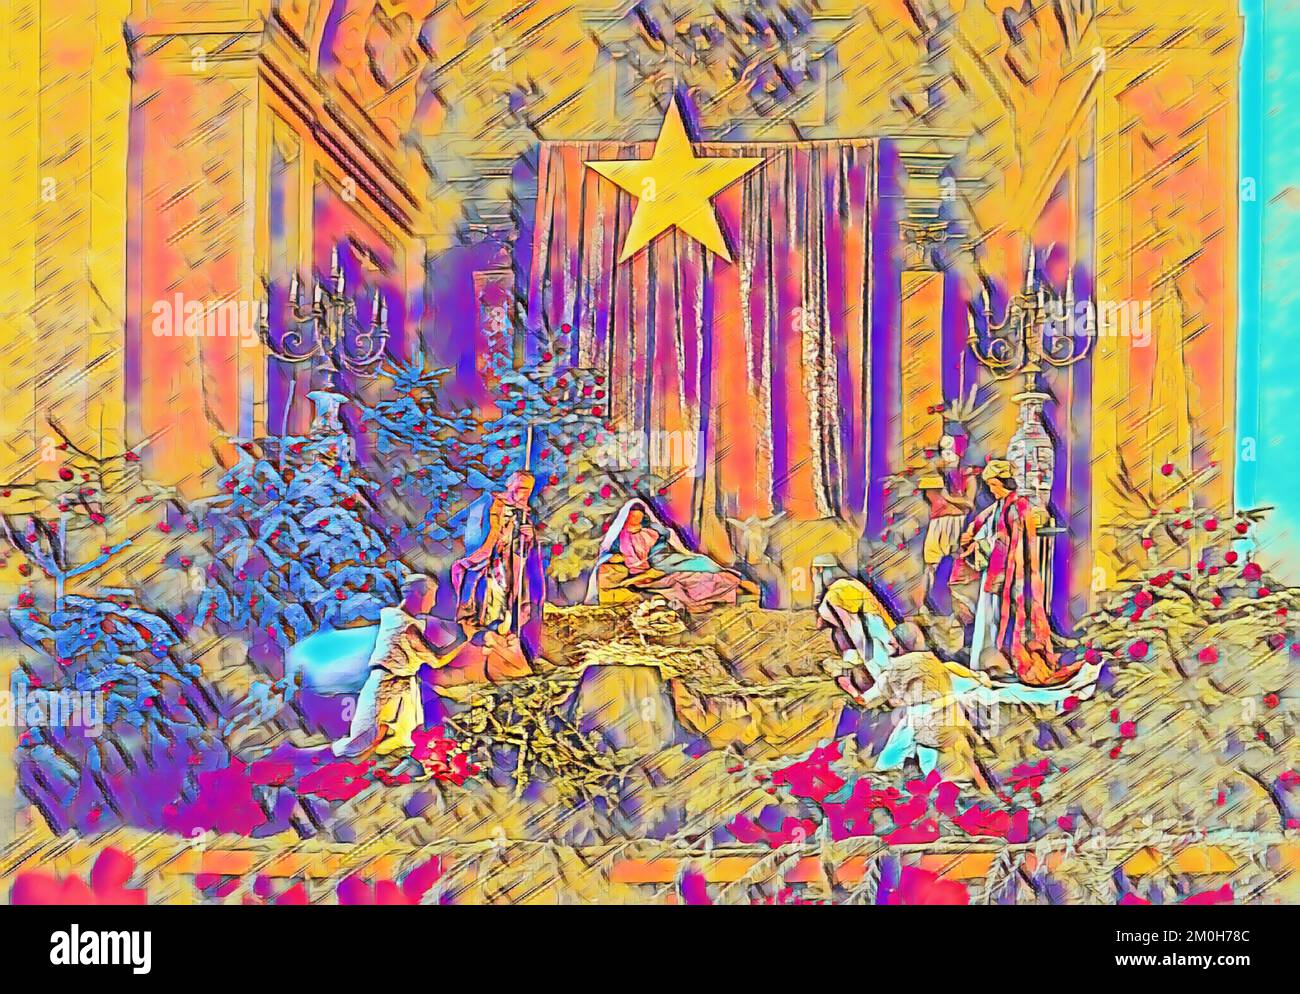 Scène de la Nativité dans l'église. Décoration de Noël. Arrière-plan de la fête des fêtes. Lumière et gloire. Mélange de peinture à l'huile. Carte de vœux. Banque D'Images